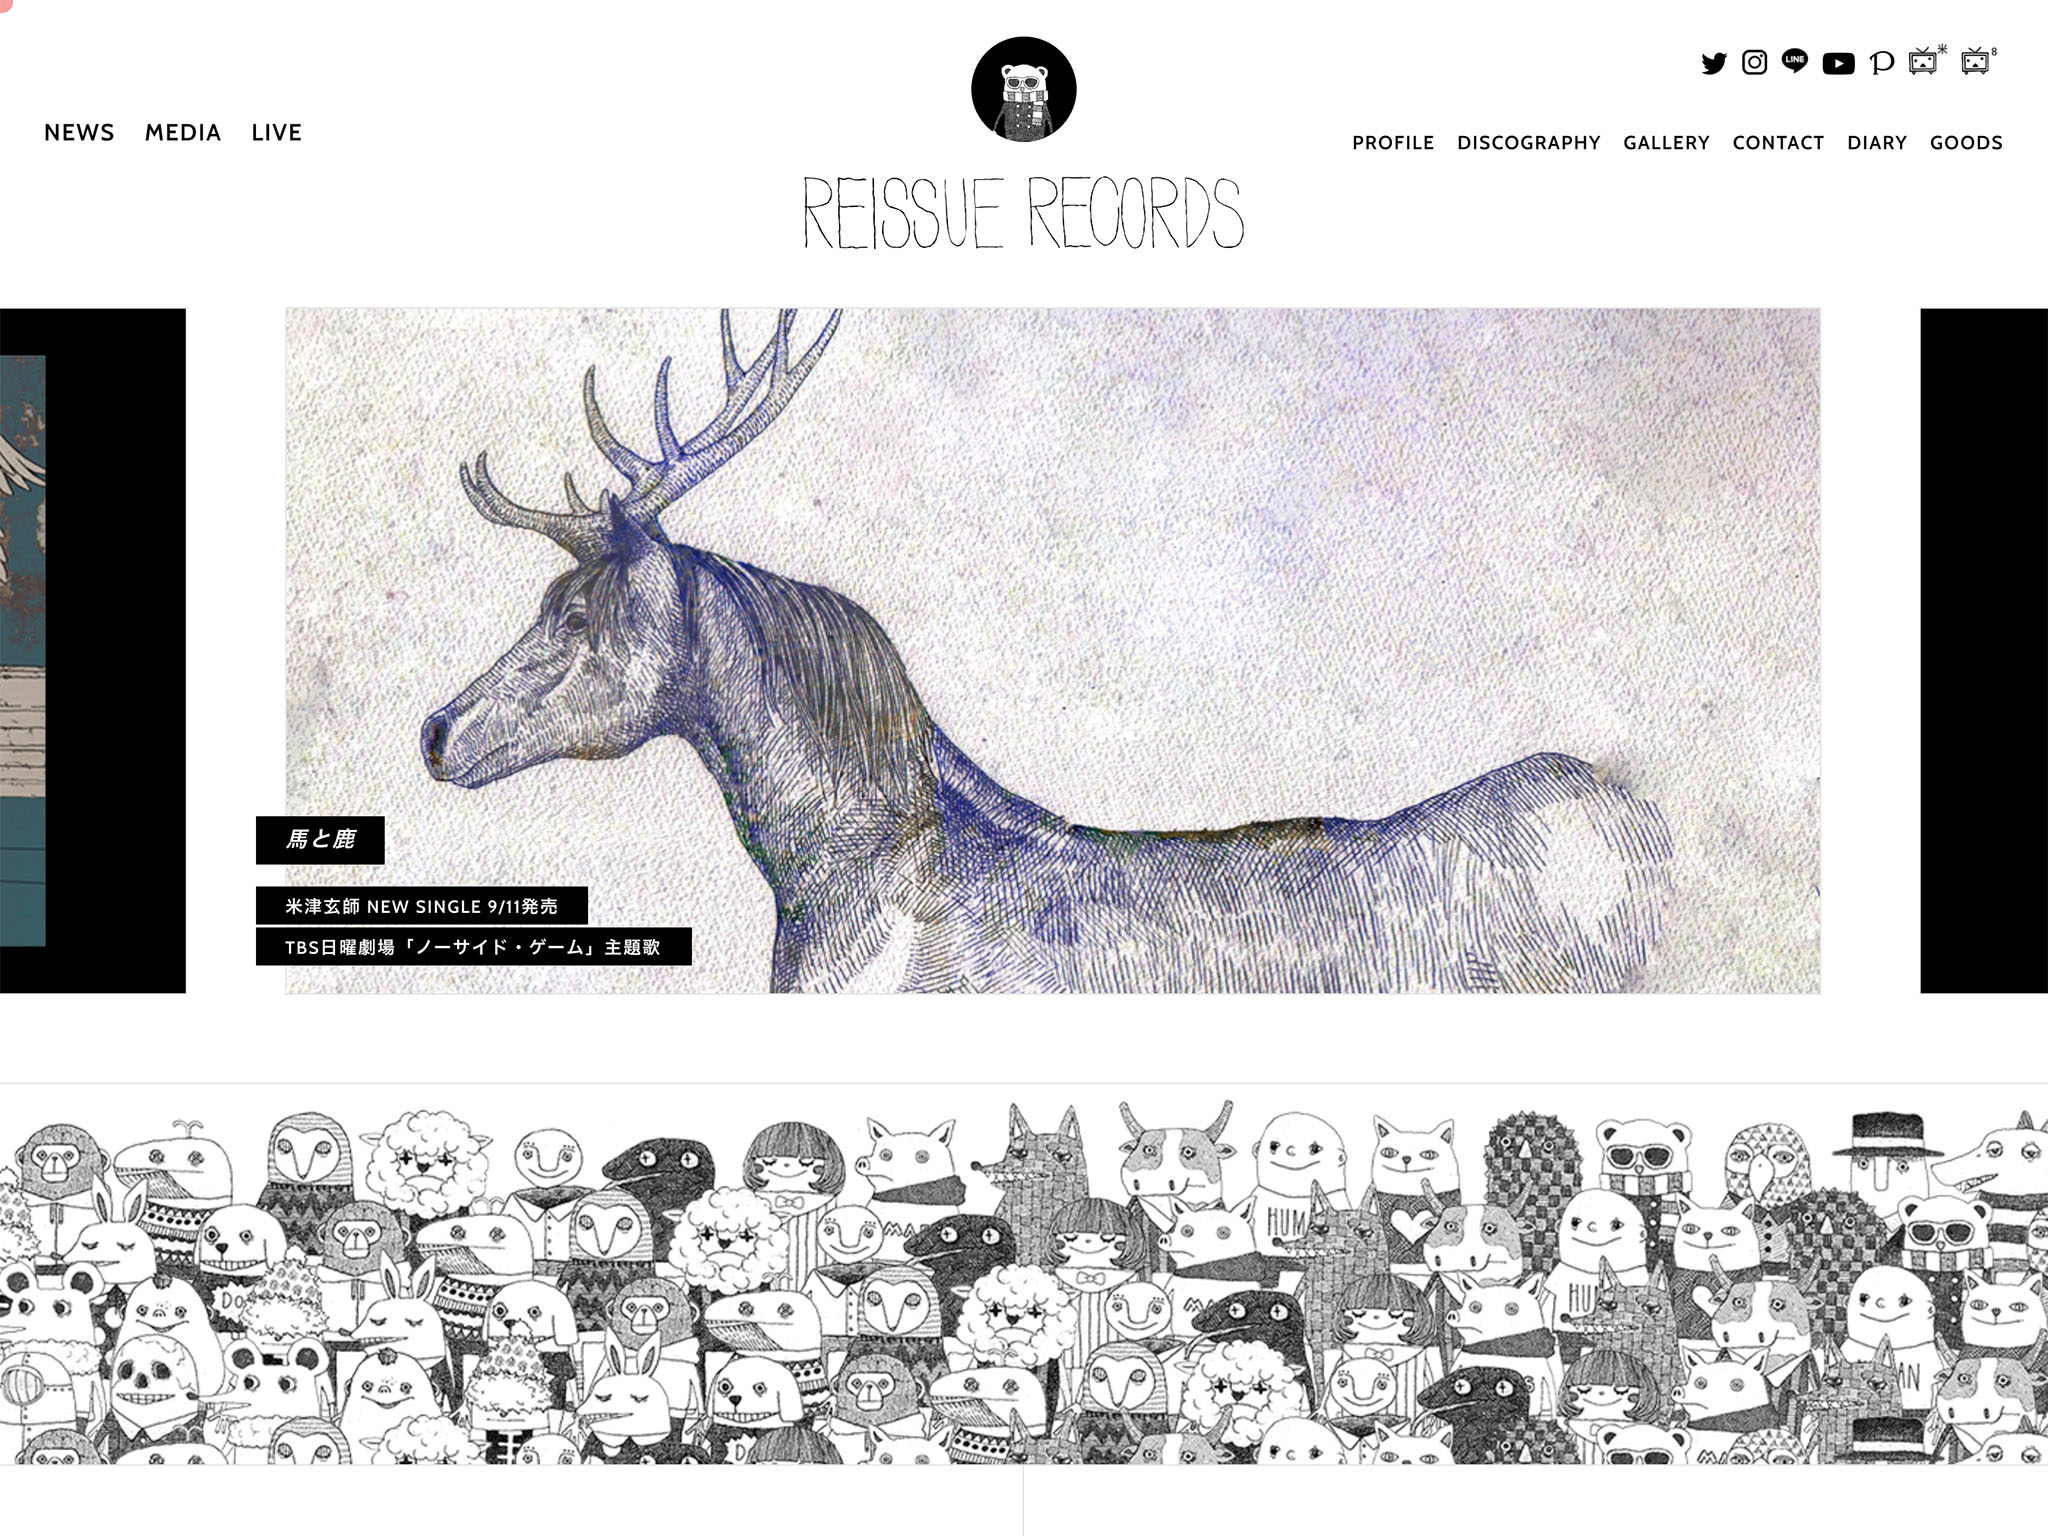 米津玄師 official site「REISSUE RECORDS」